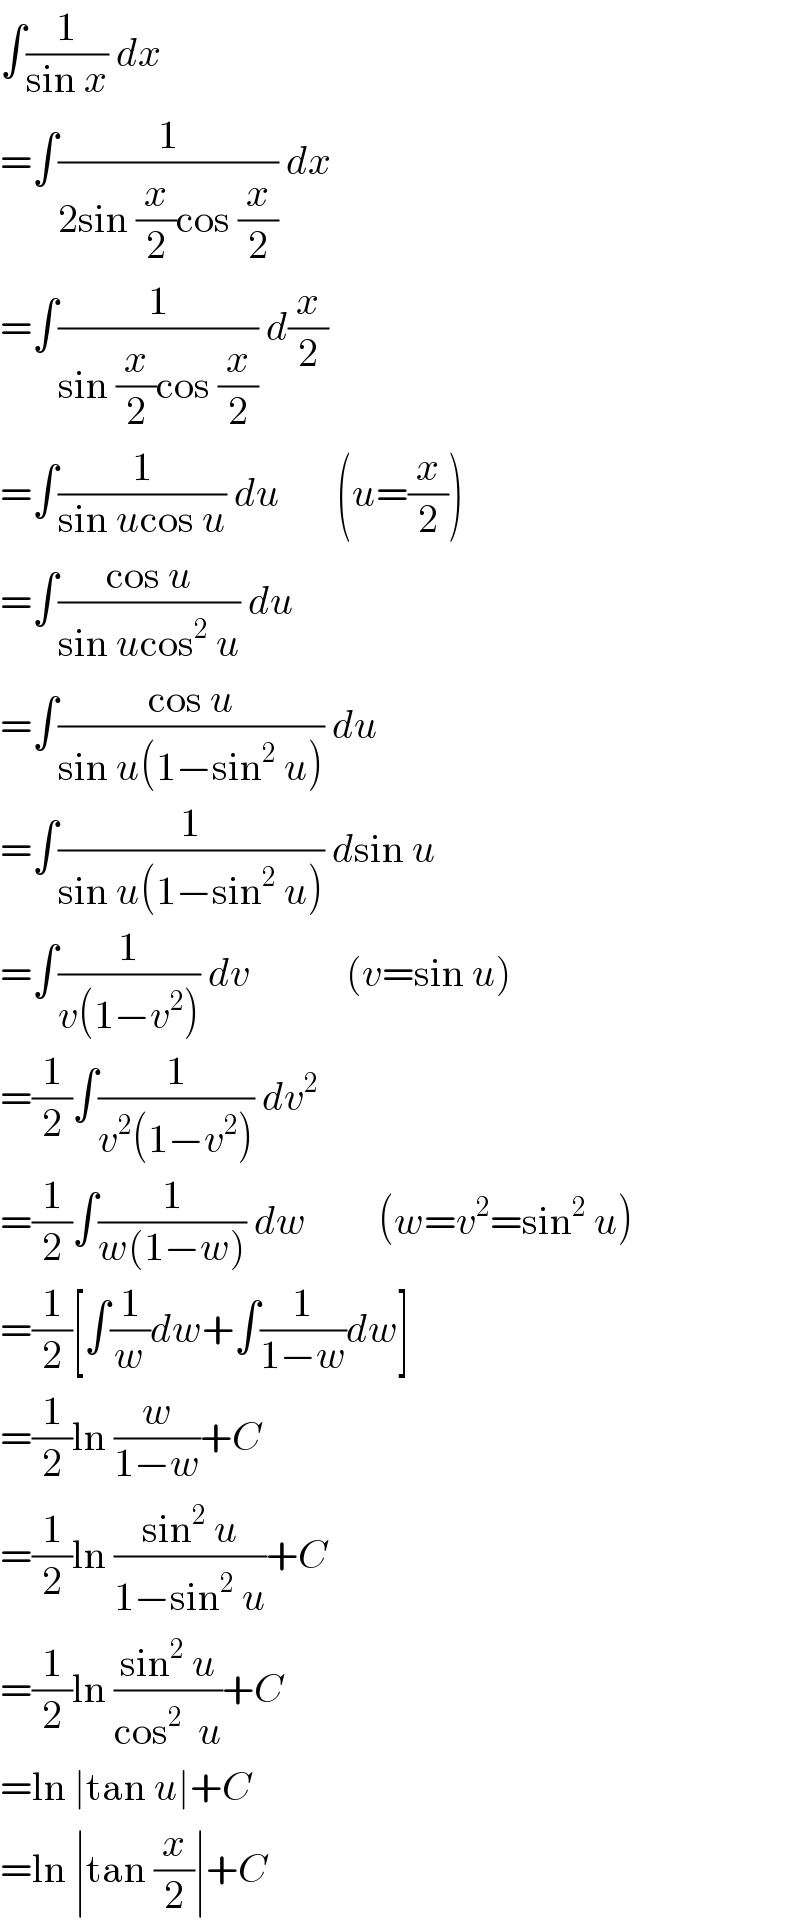 ∫(1/(sin x)) dx  =∫(1/(2sin (x/2)cos (x/2))) dx  =∫(1/(sin (x/2)cos (x/2))) d(x/2)  =∫(1/(sin ucos u)) du       (u=(x/2))  =∫((cos u)/(sin ucos^2  u)) du  =∫((cos u)/(sin u(1−sin^2  u))) du  =∫(1/(sin u(1−sin^2  u))) dsin u  =∫(1/(v(1−v^2 ))) dv            (v=sin u)  =(1/2)∫(1/(v^2 (1−v^2 ))) dv^2   =(1/2)∫(1/(w(1−w))) dw         (w=v^2 =sin^2  u)  =(1/2)[∫(1/w)dw+∫(1/(1−w))dw]  =(1/2)ln (w/(1−w))+C  =(1/2)ln ((sin^2  u)/(1−sin^2  u))+C  =(1/2)ln ((sin^2  u)/(cos^2   u))+C  =ln ∣tan u∣+C  =ln ∣tan (x/2)∣+C  